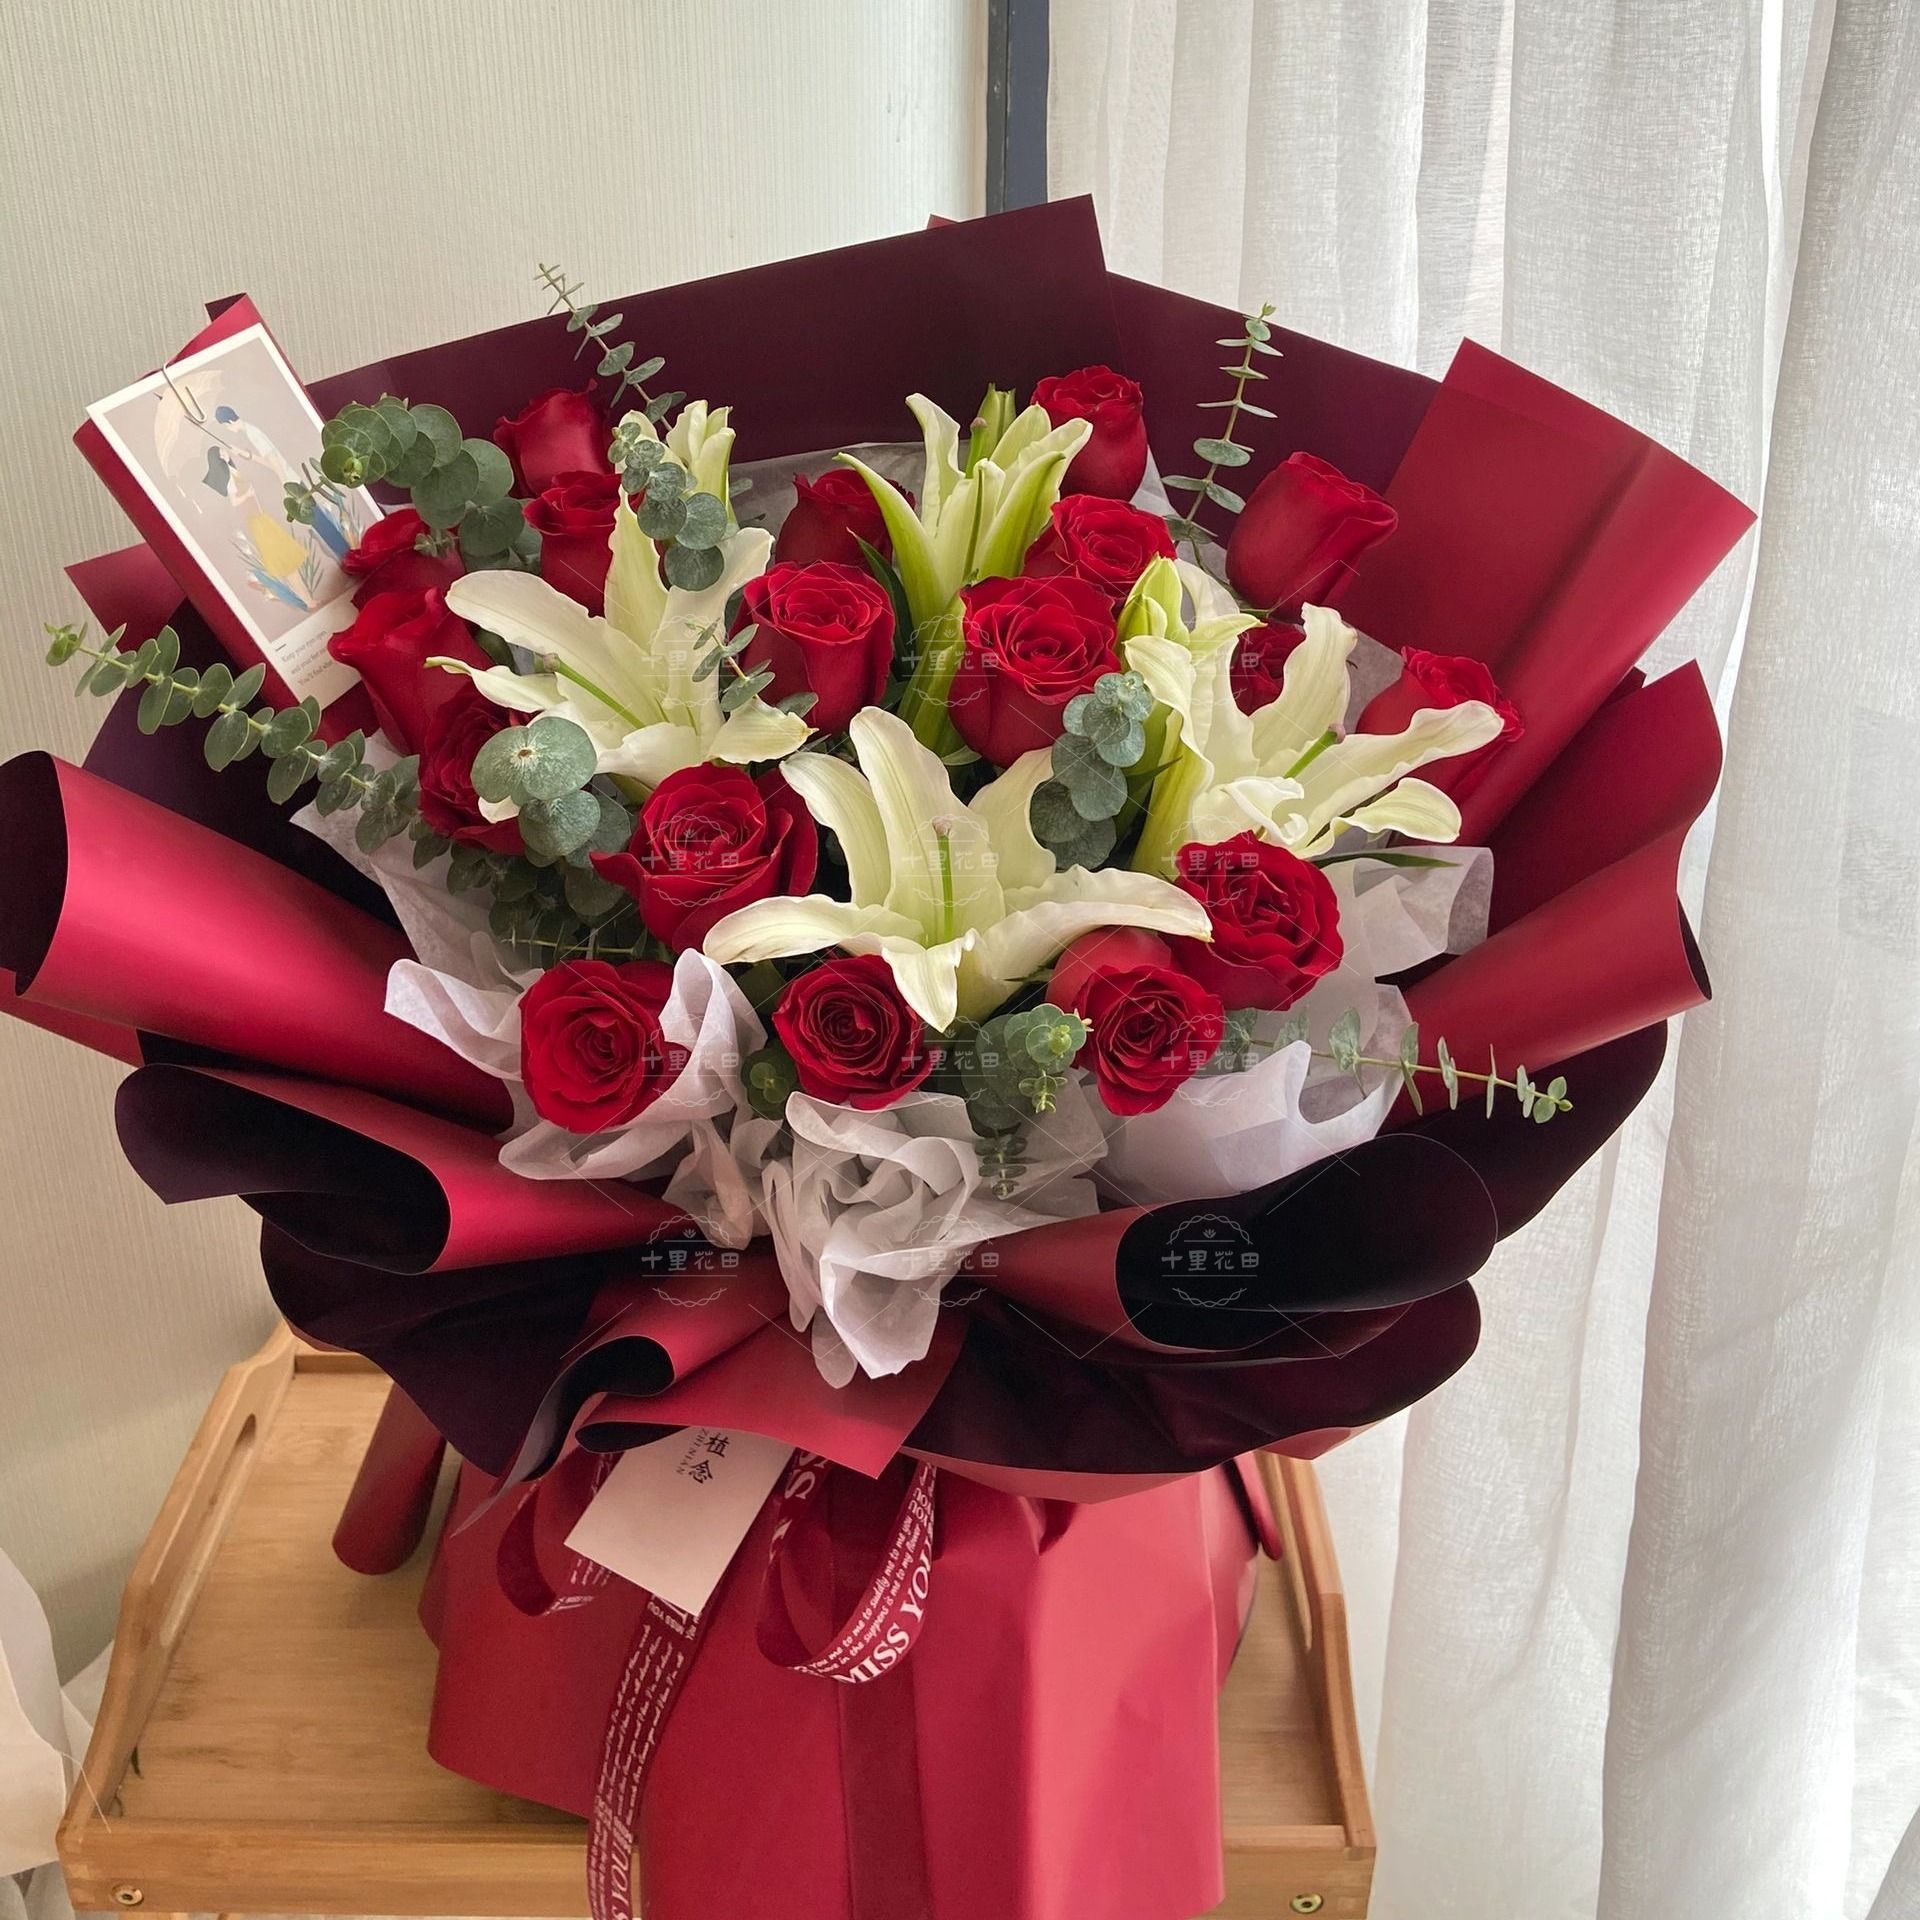 【浪漫永存】4朵百合混搭红玫瑰花束送女友送朋友生日礼物生日鲜花花店送花上门呢